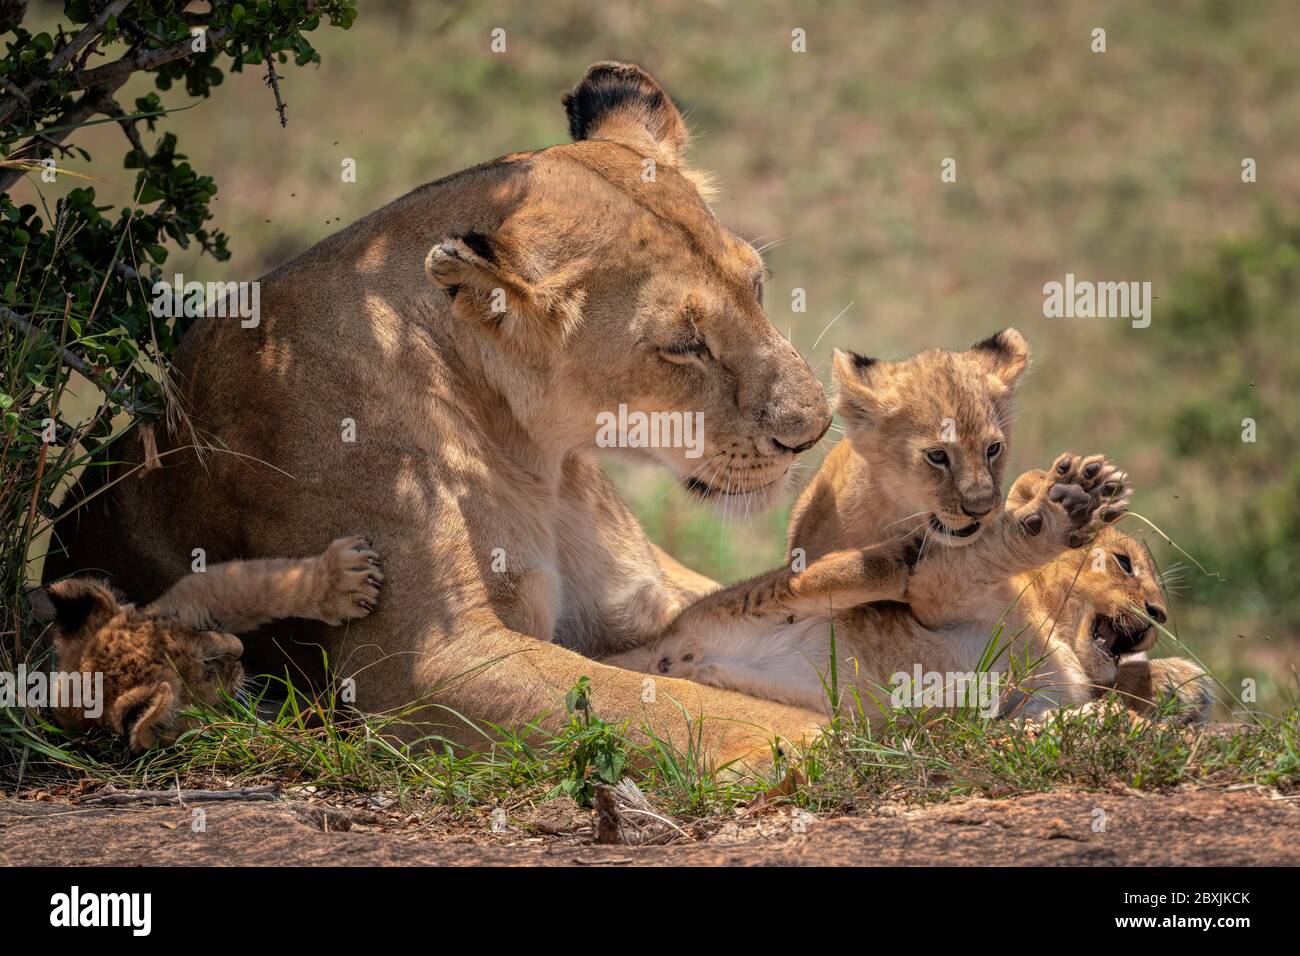 Mère lionne regardant tendinement ses trois jeunes petits comme ils jouent. Photo prise à Masai Mara, Kenya. Banque D'Images